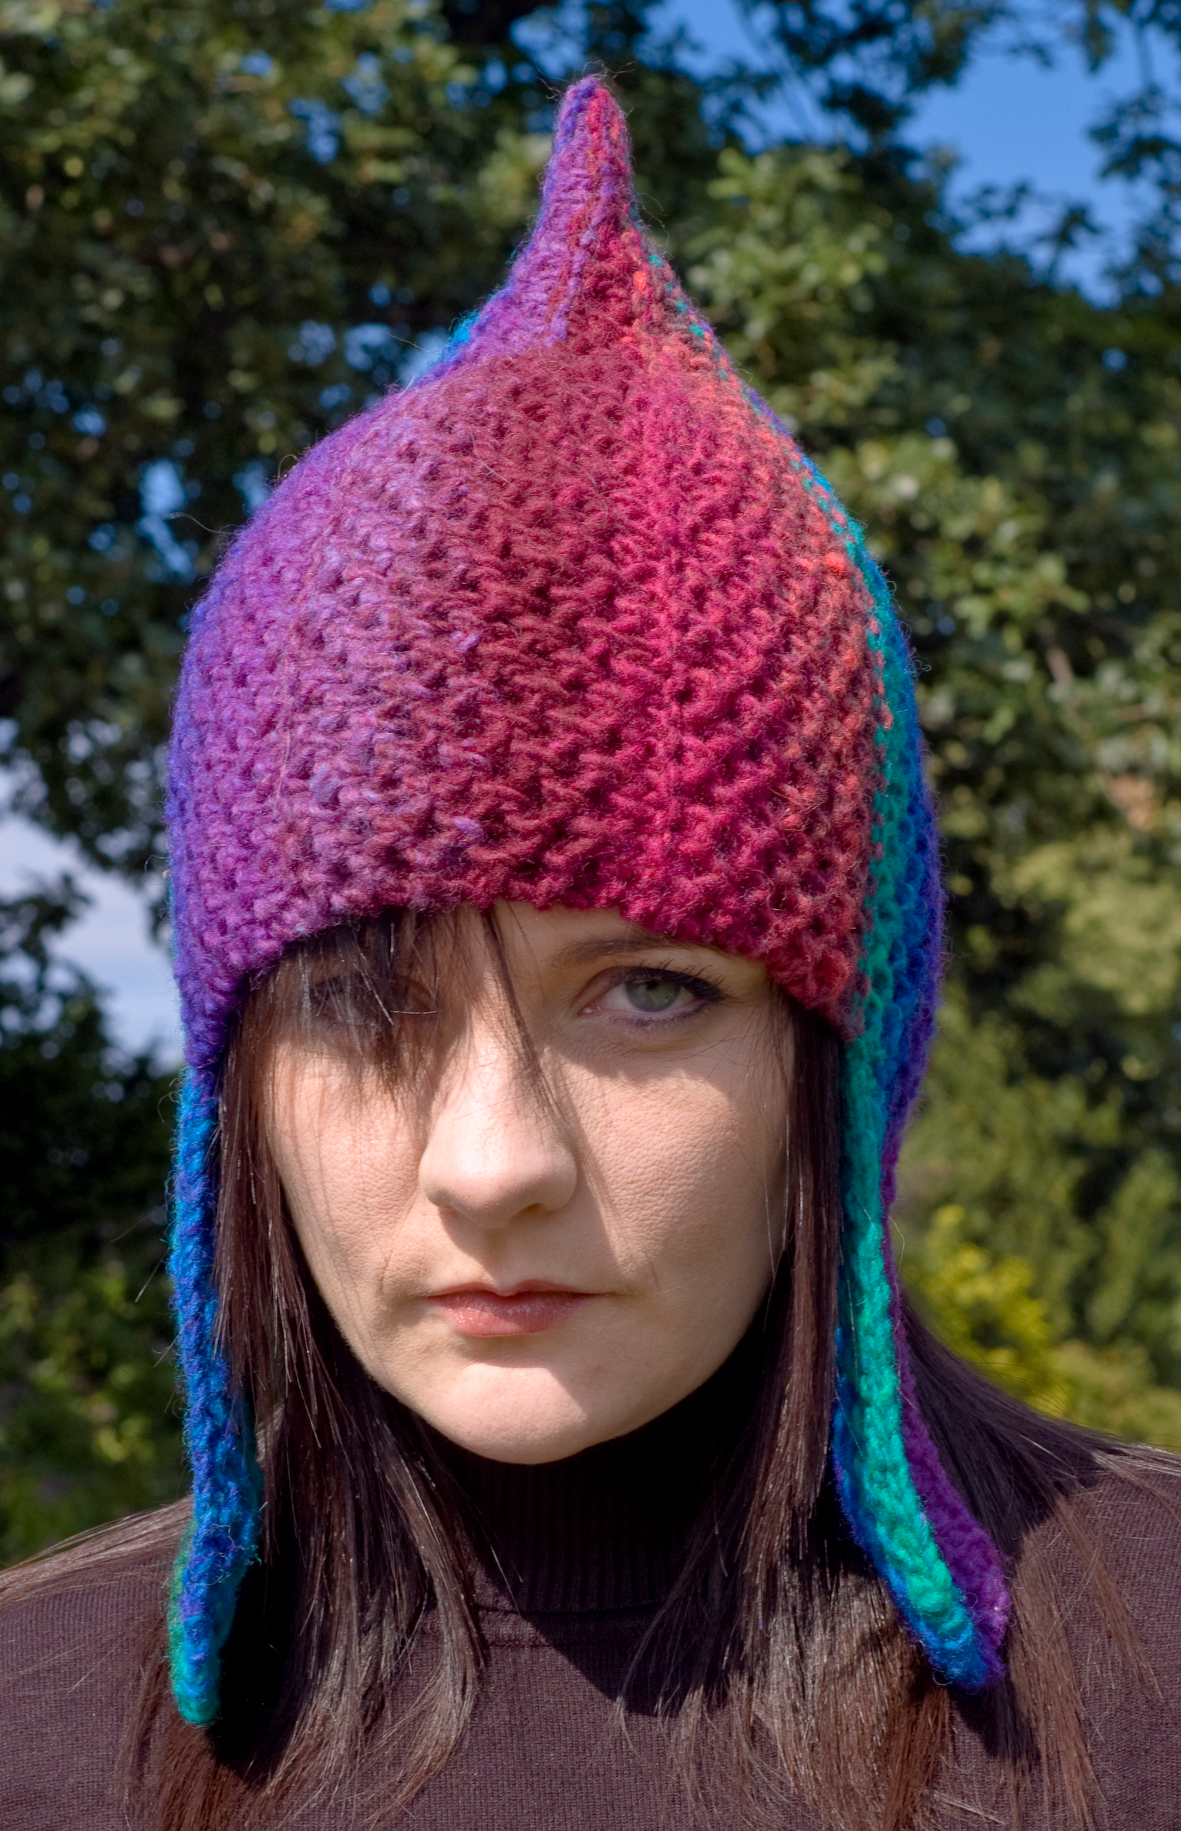 Rainbow Warrior chullo pixie Hat knitting pattern